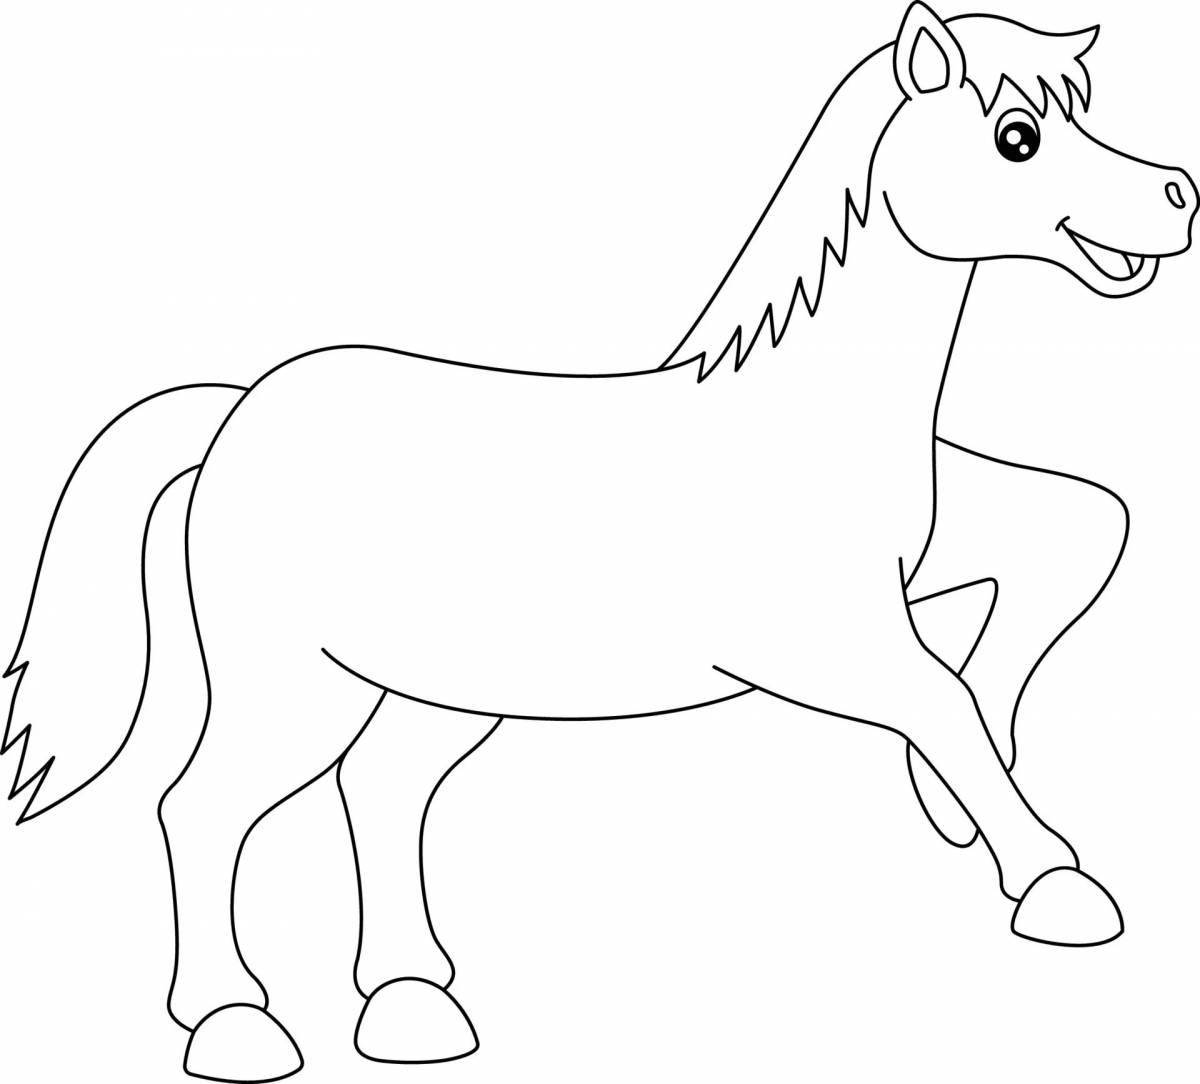 Яркая раскраска лошадь для детей 4-5 лет